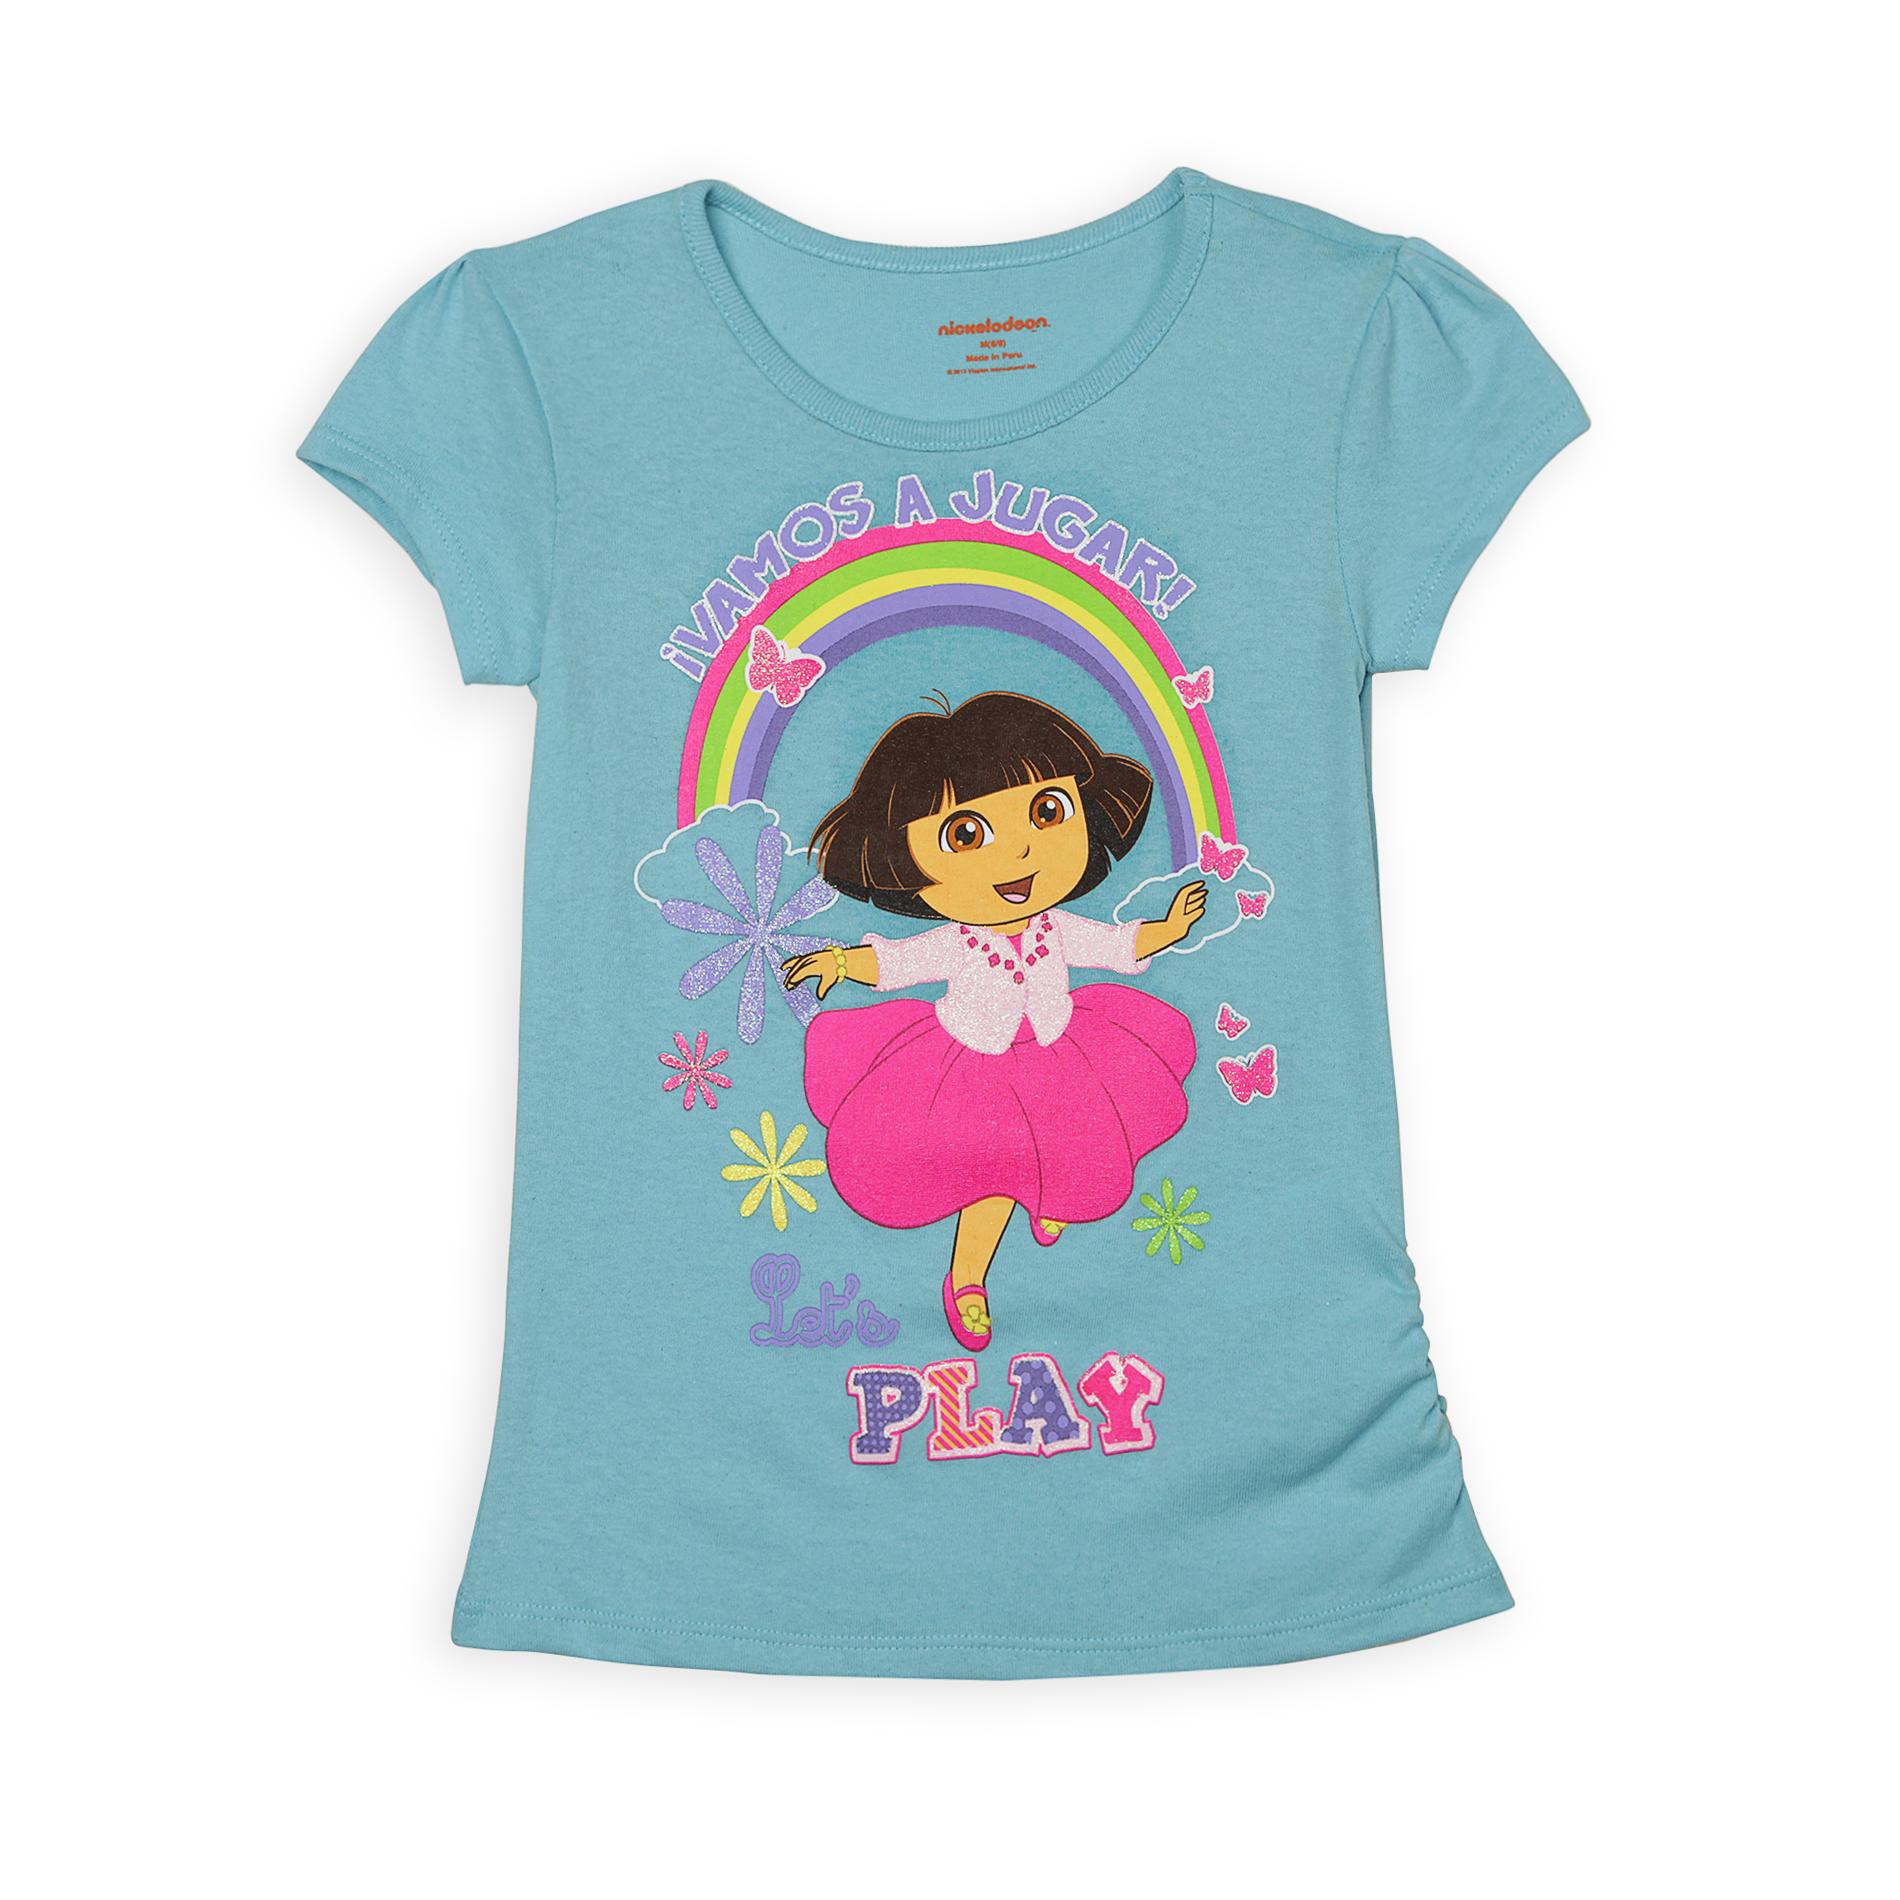 Nickelodeon Dora The Explorer Girl's Graphic T-Shirt